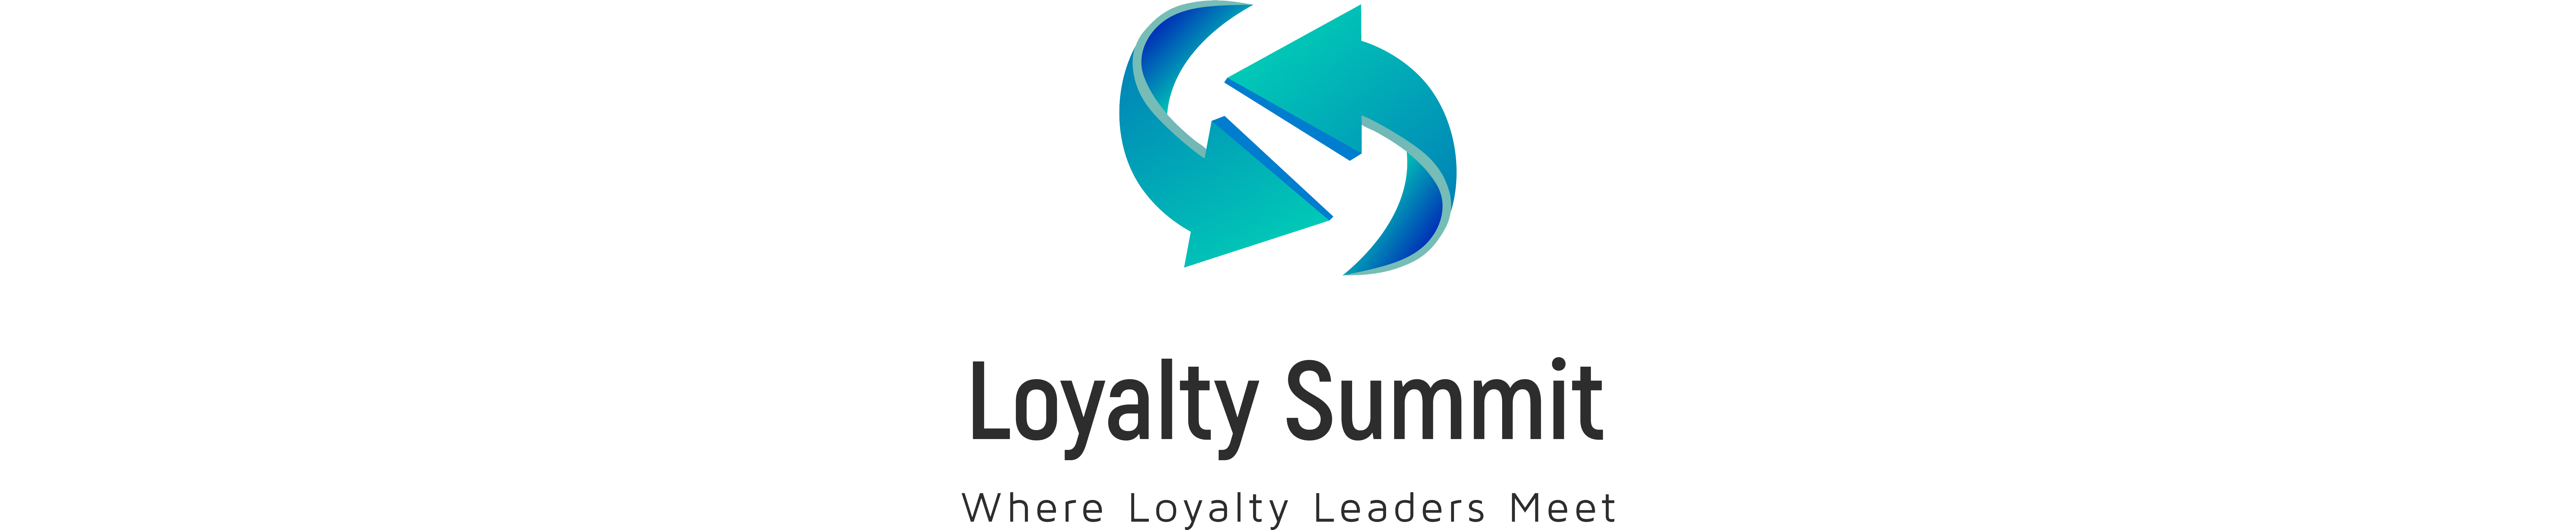 0logo-loyalty-summit-with-tagline-1-.jpg